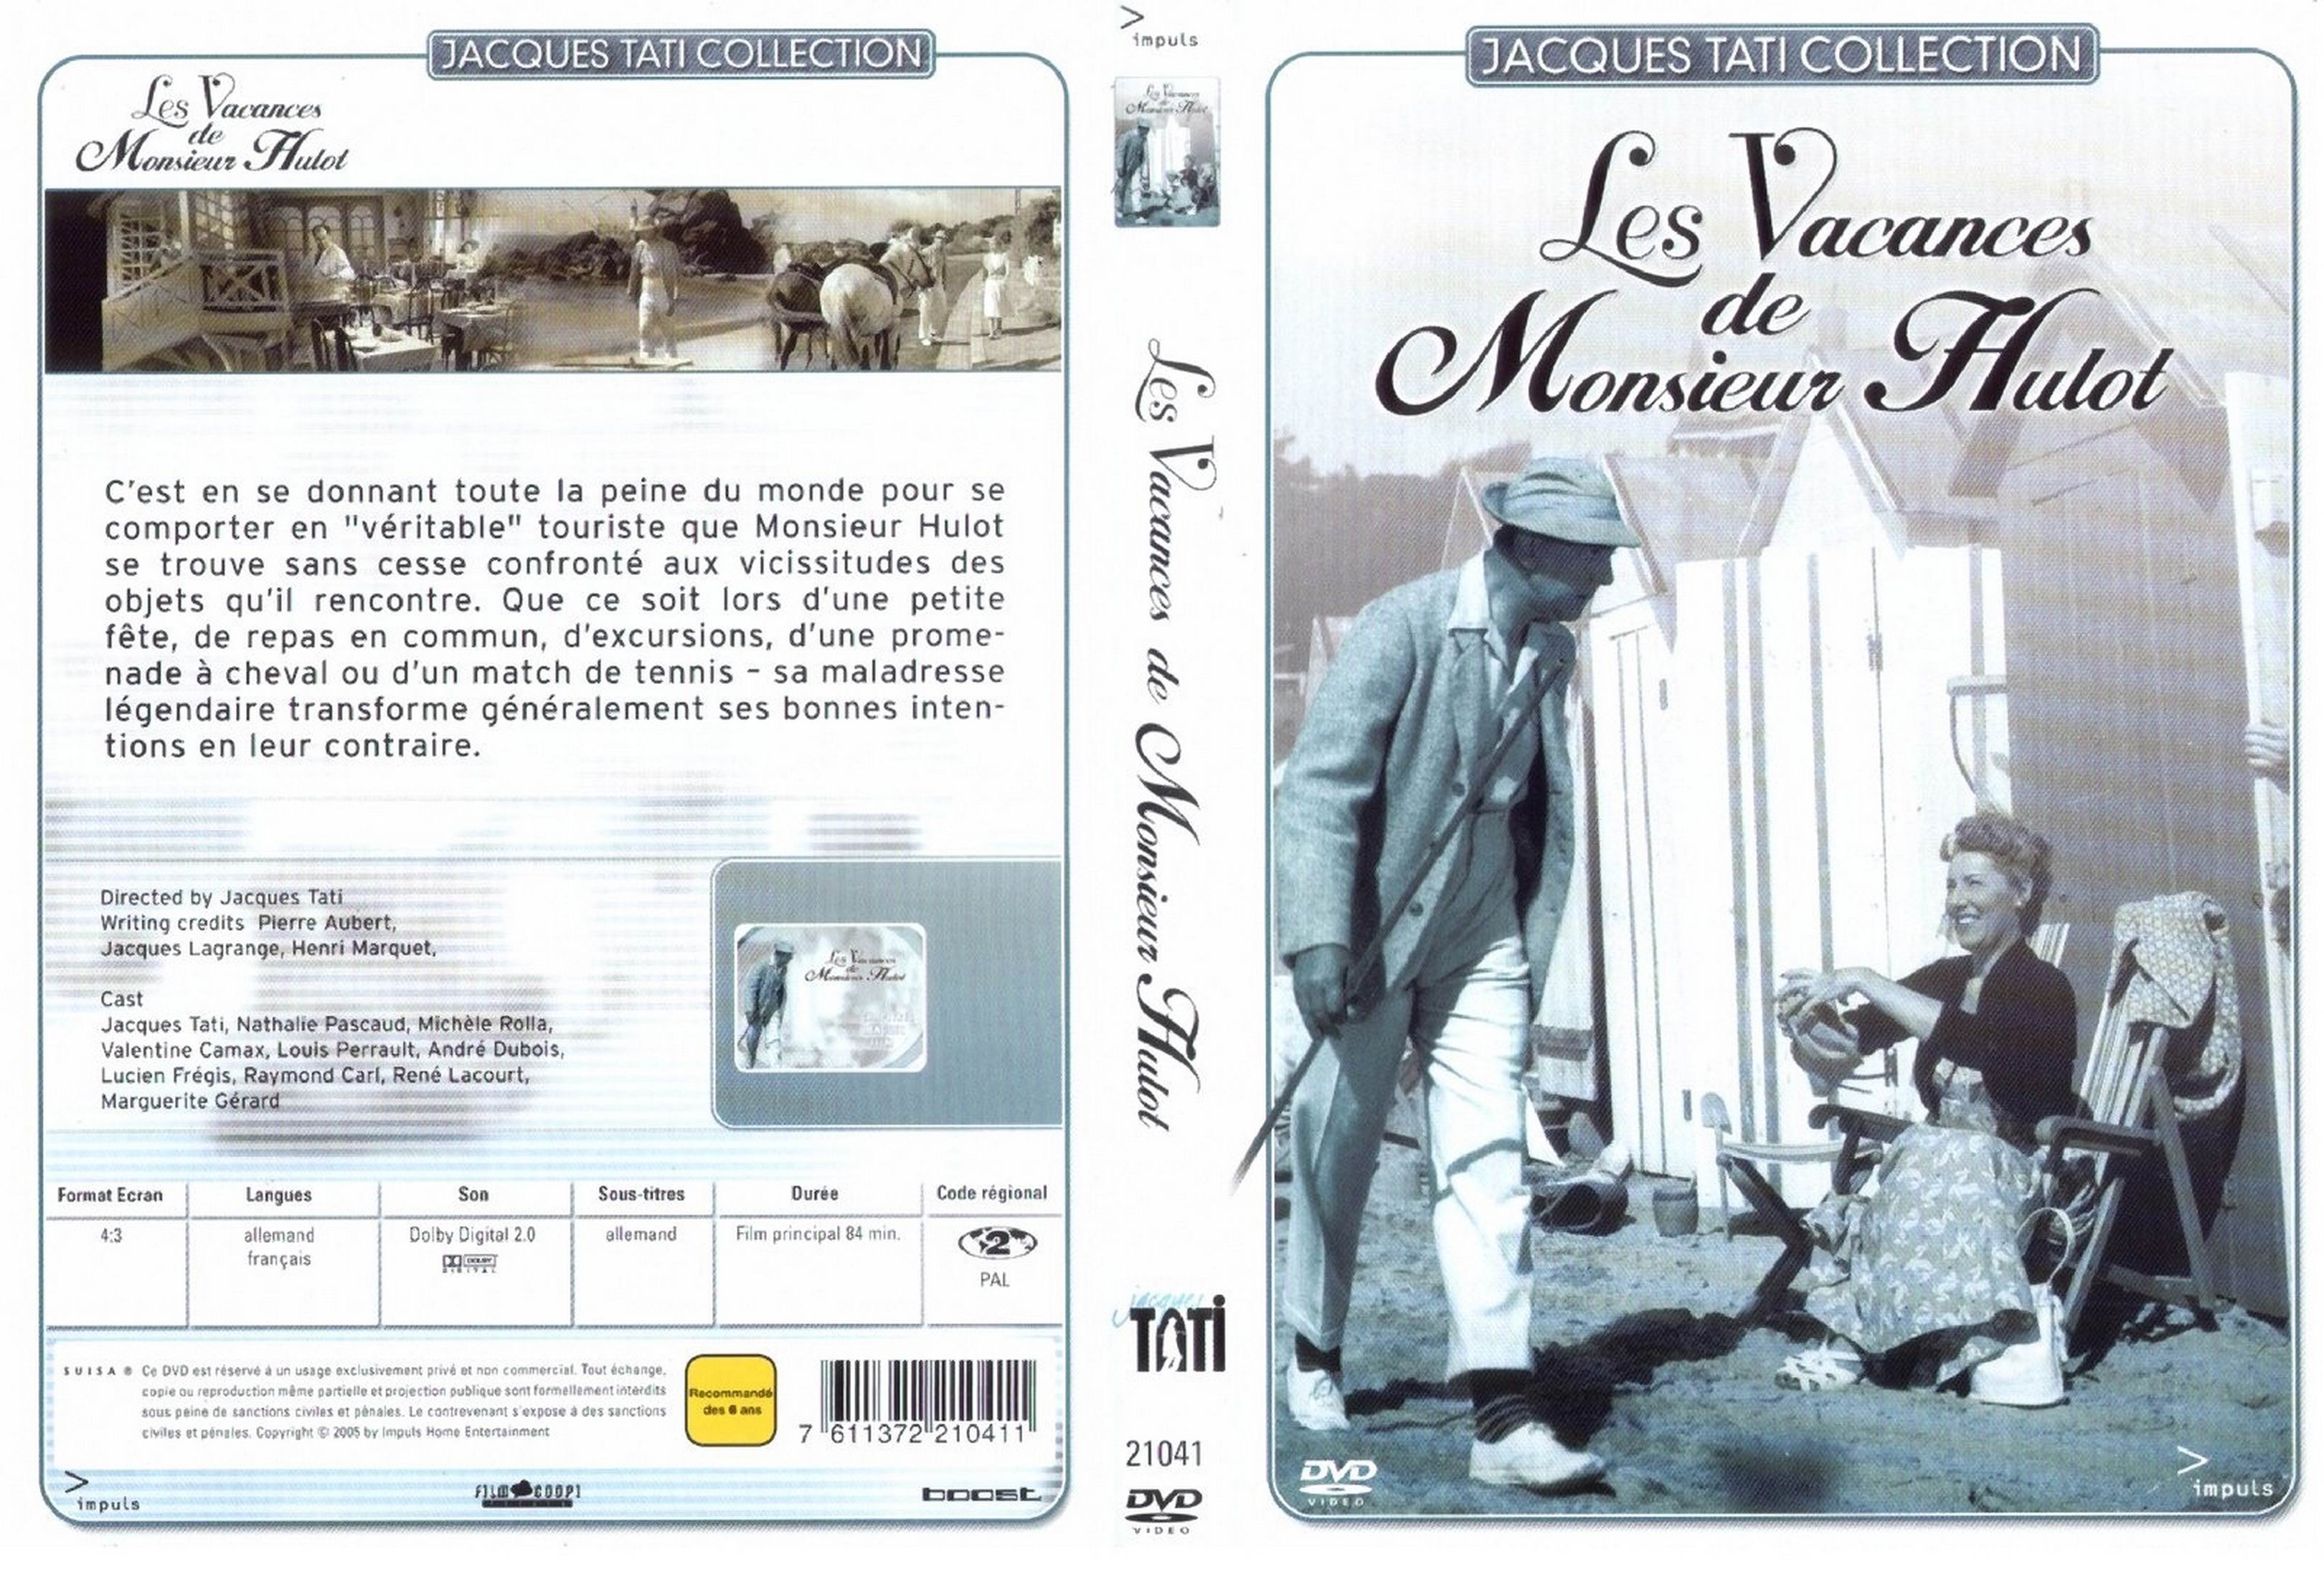 Jaquette DVD Les vacances de Monsieur Hulot v2